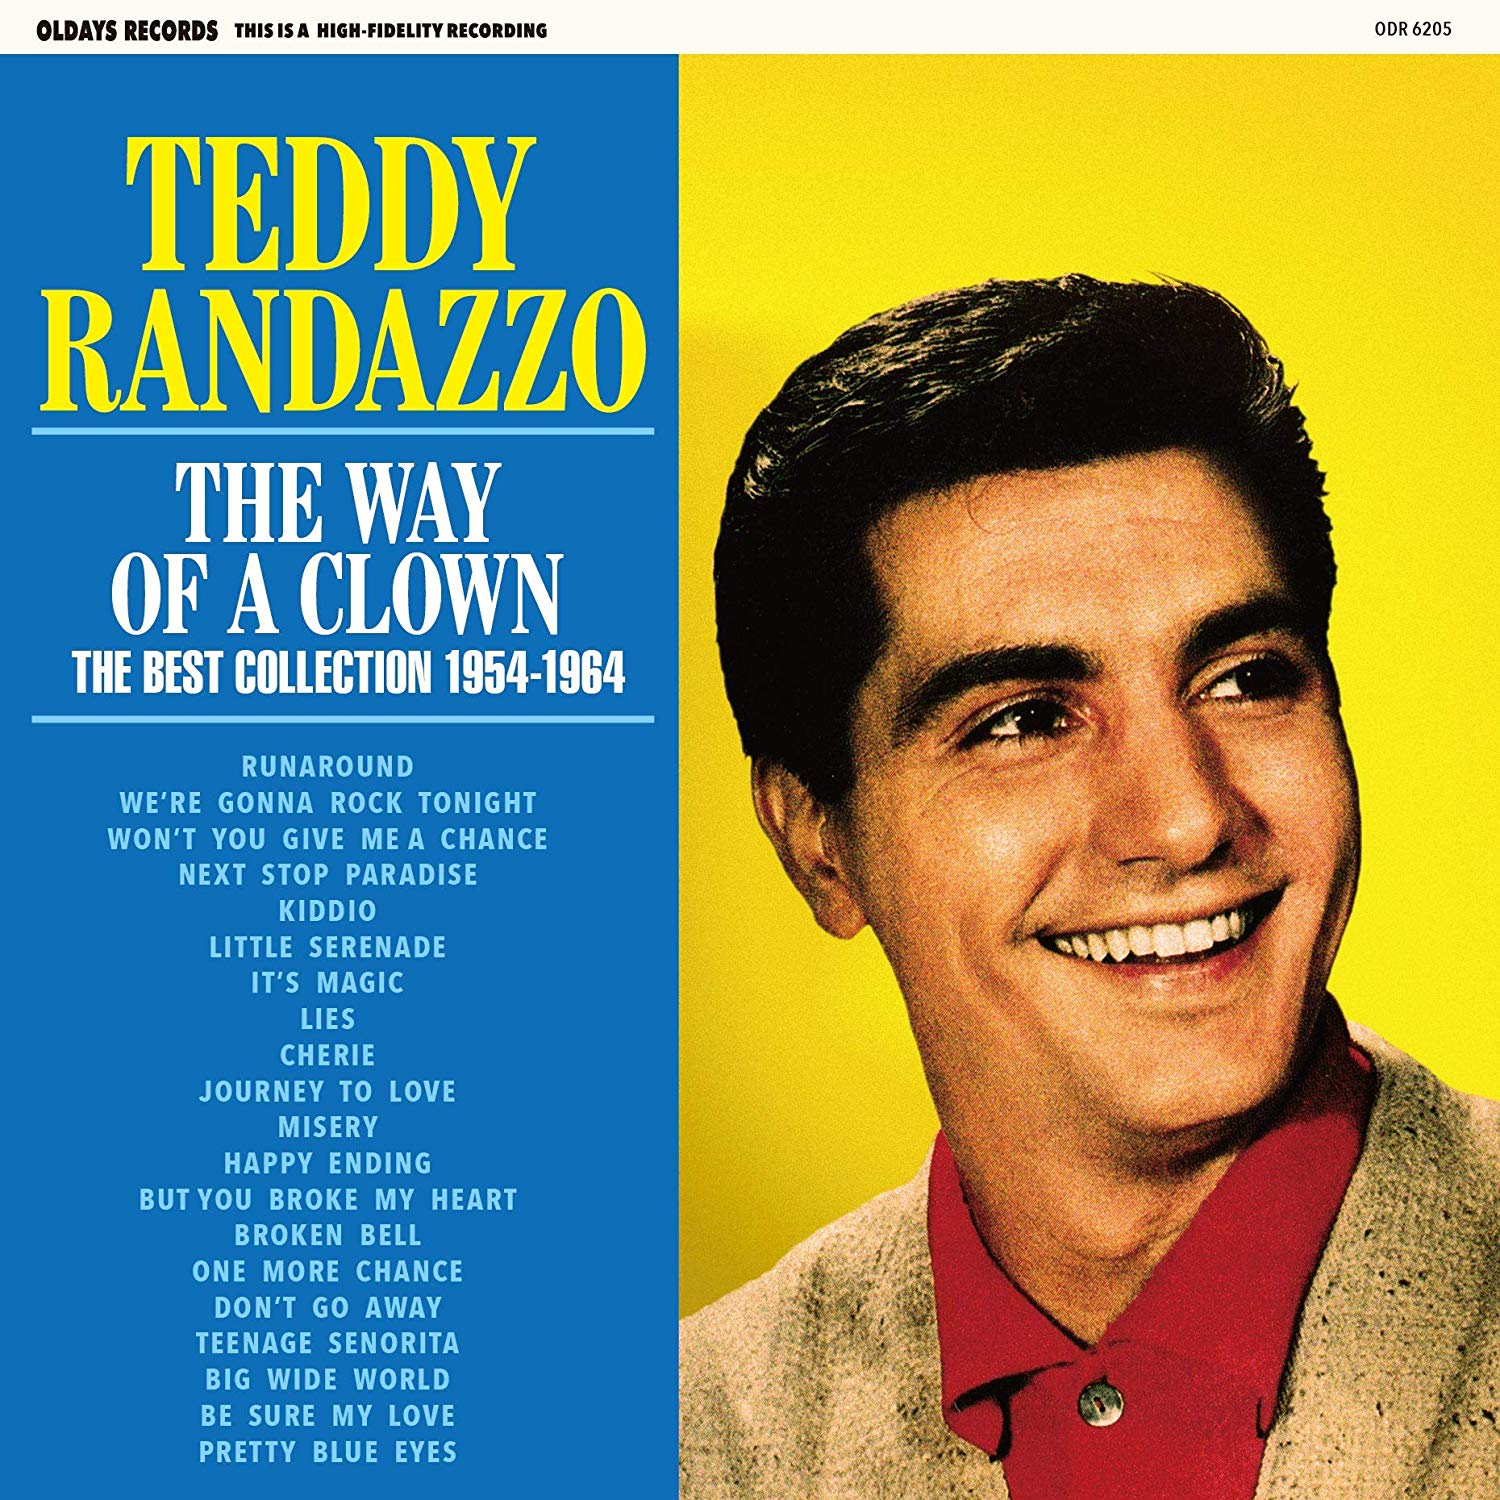 Teddy Randazzo